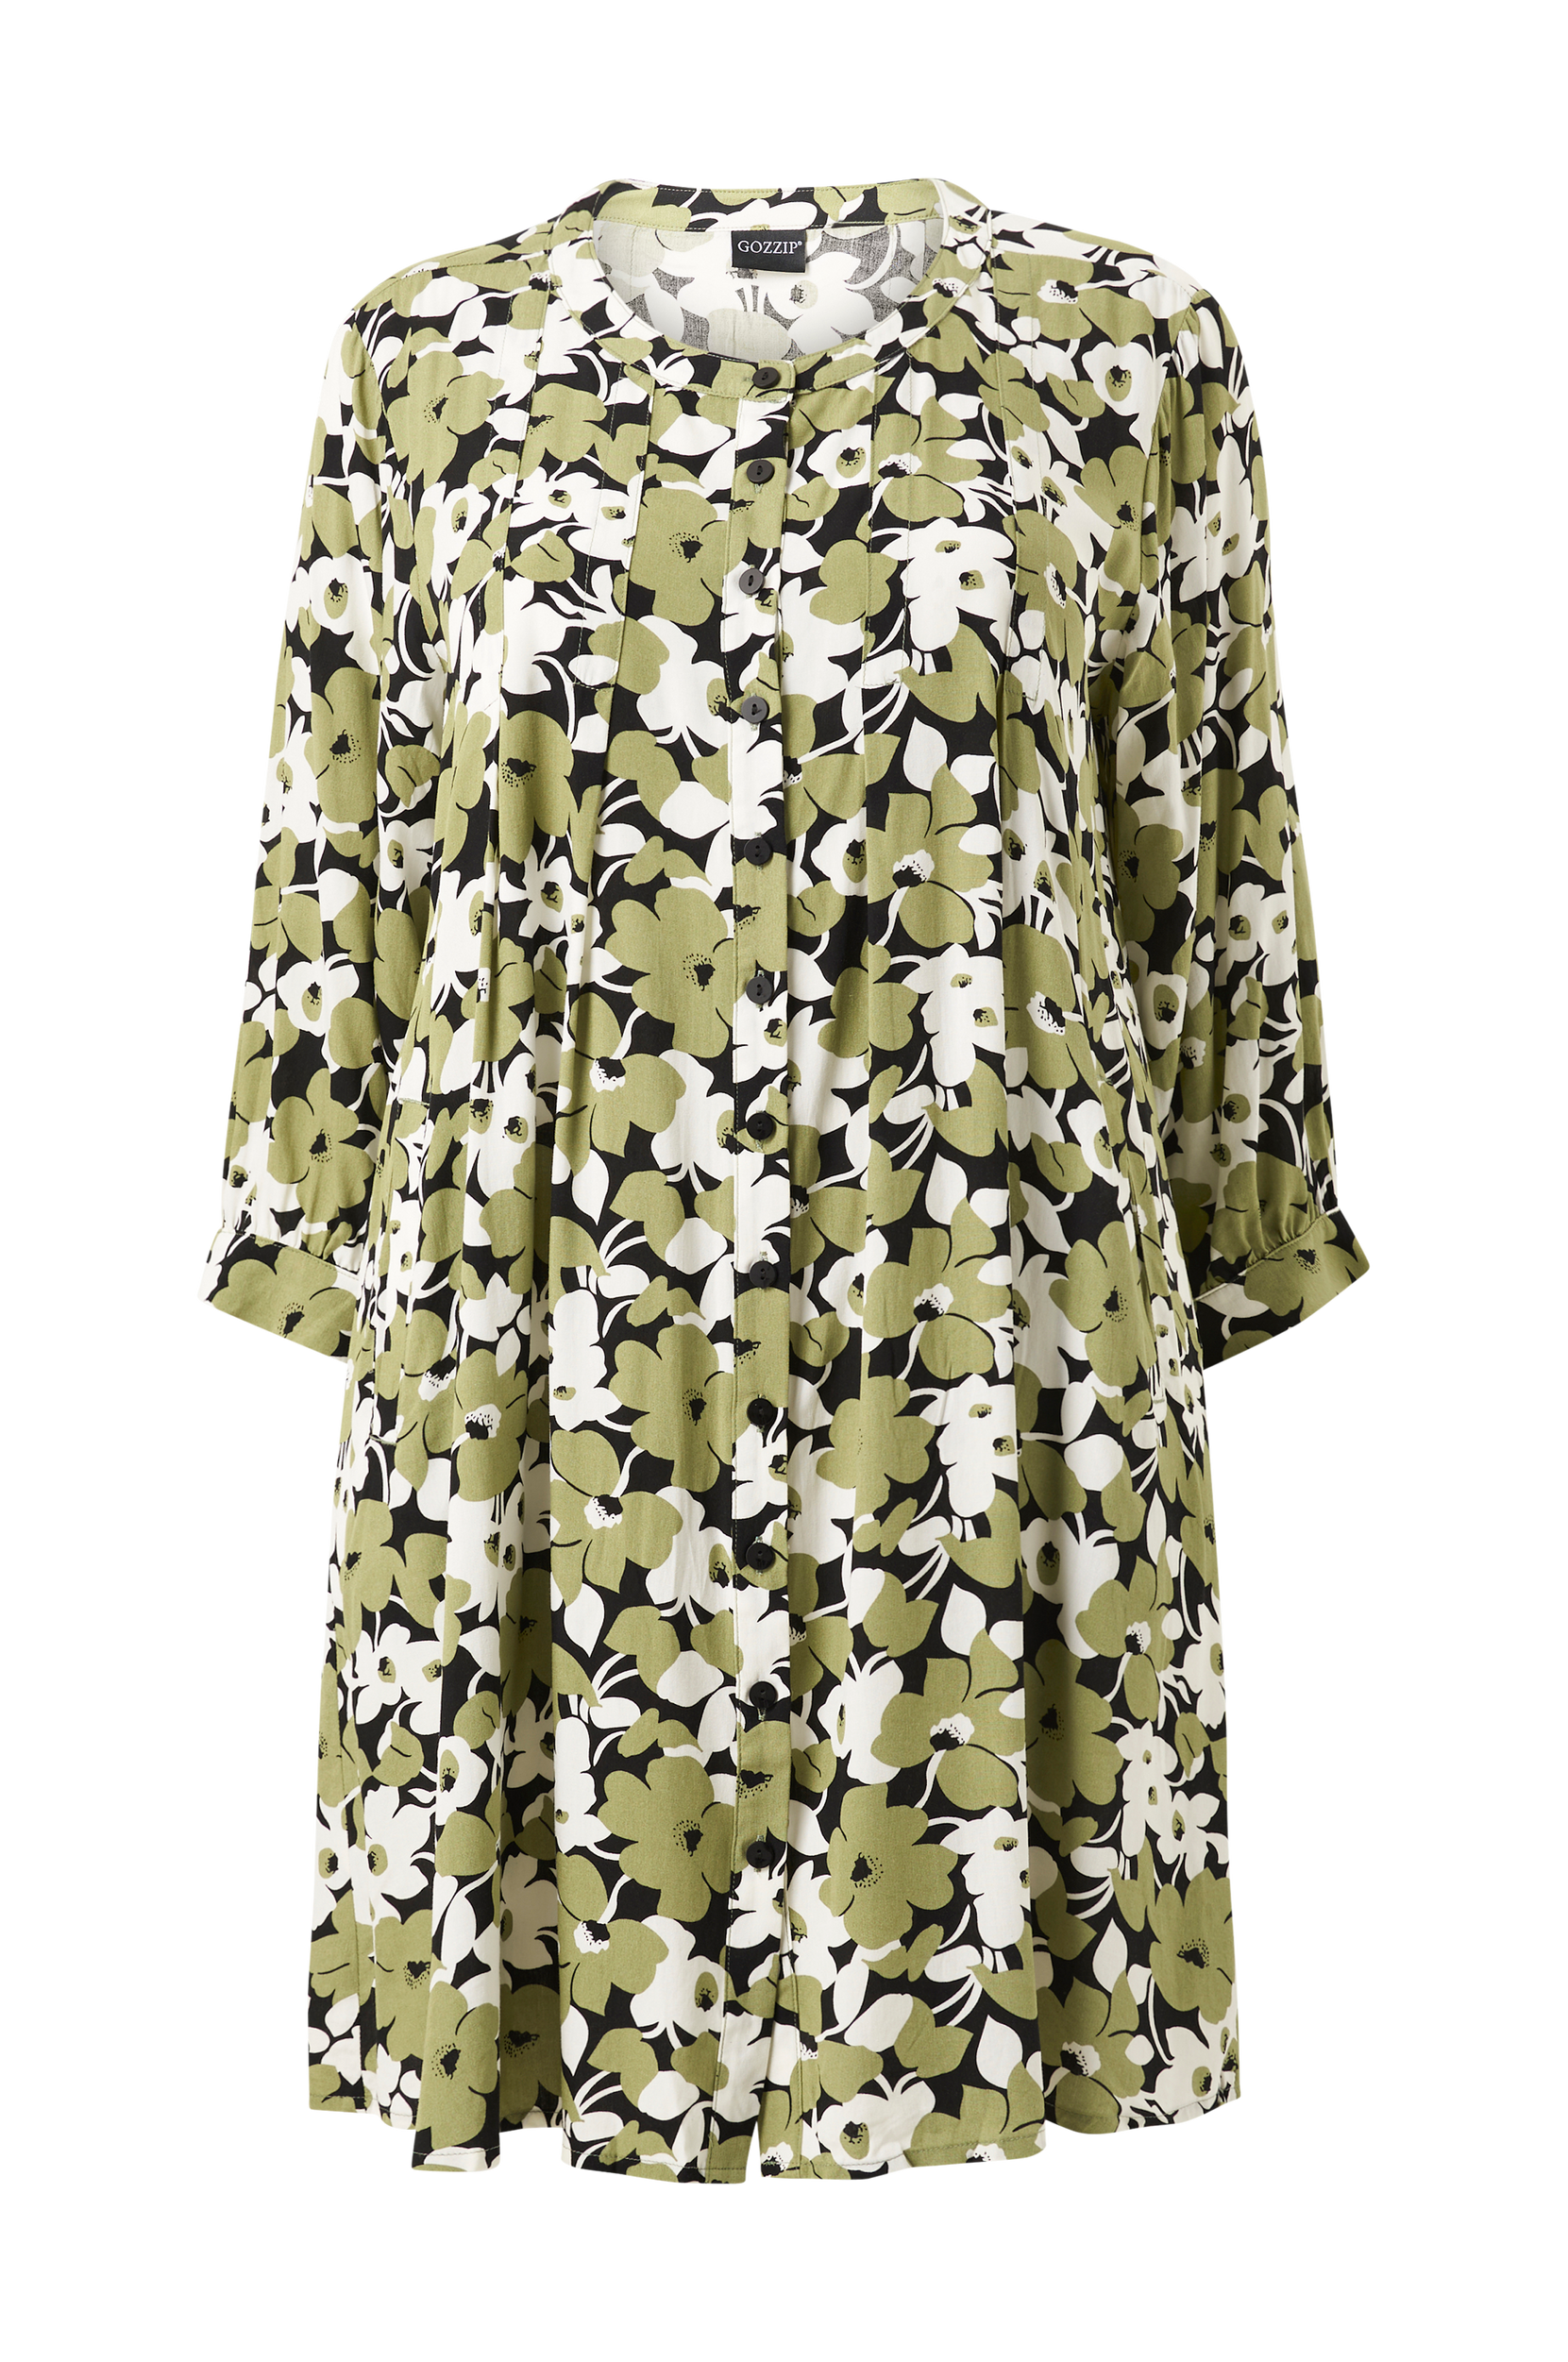 Gozzip - Kelly Shirt - Sort - 54/56 - Skjorter - Tøj til kvinder (31212352)